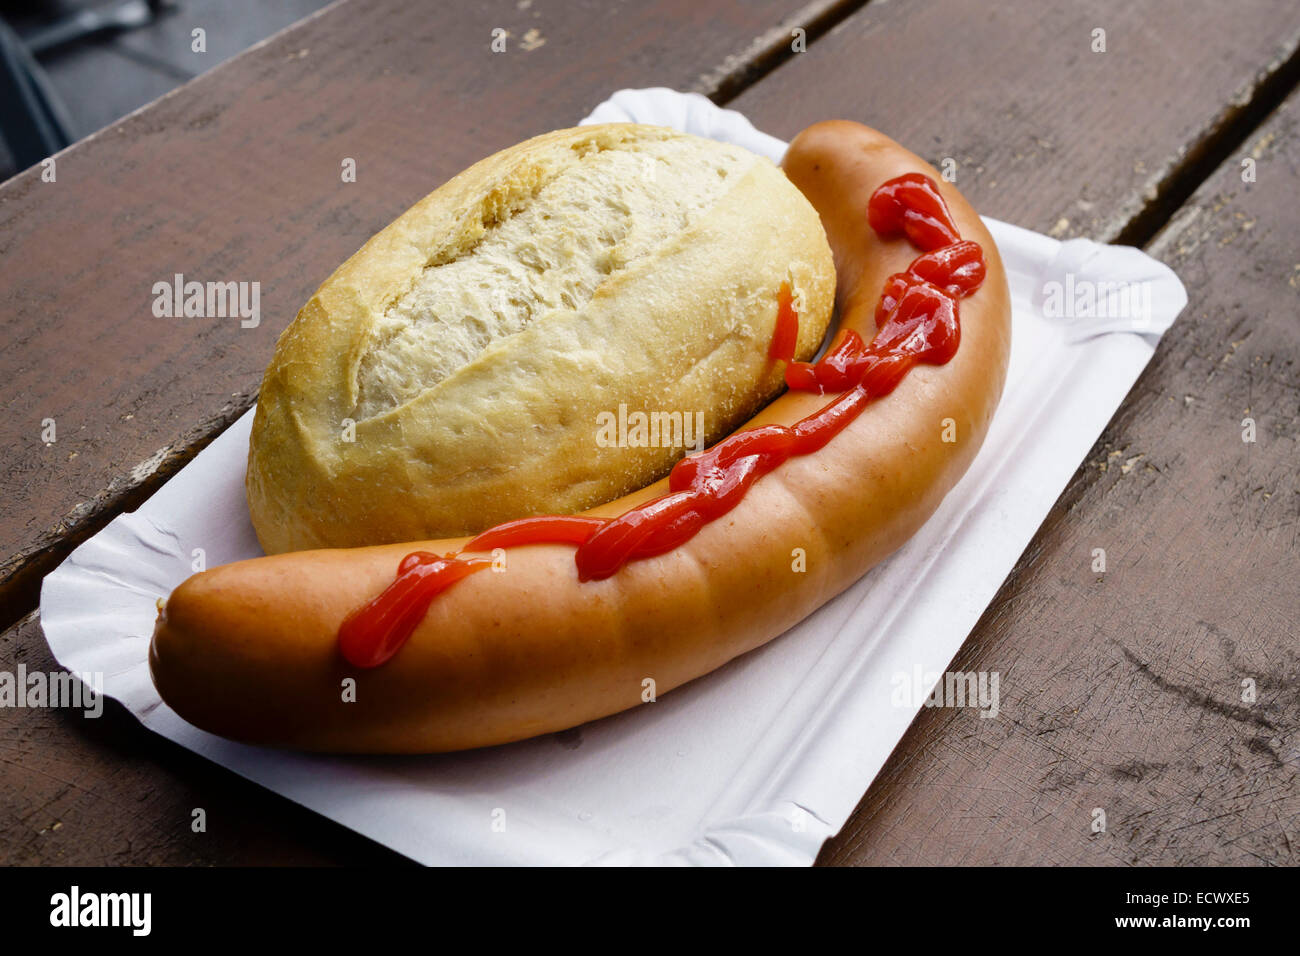 Wurstchen mit brot, German snack Stock Photo